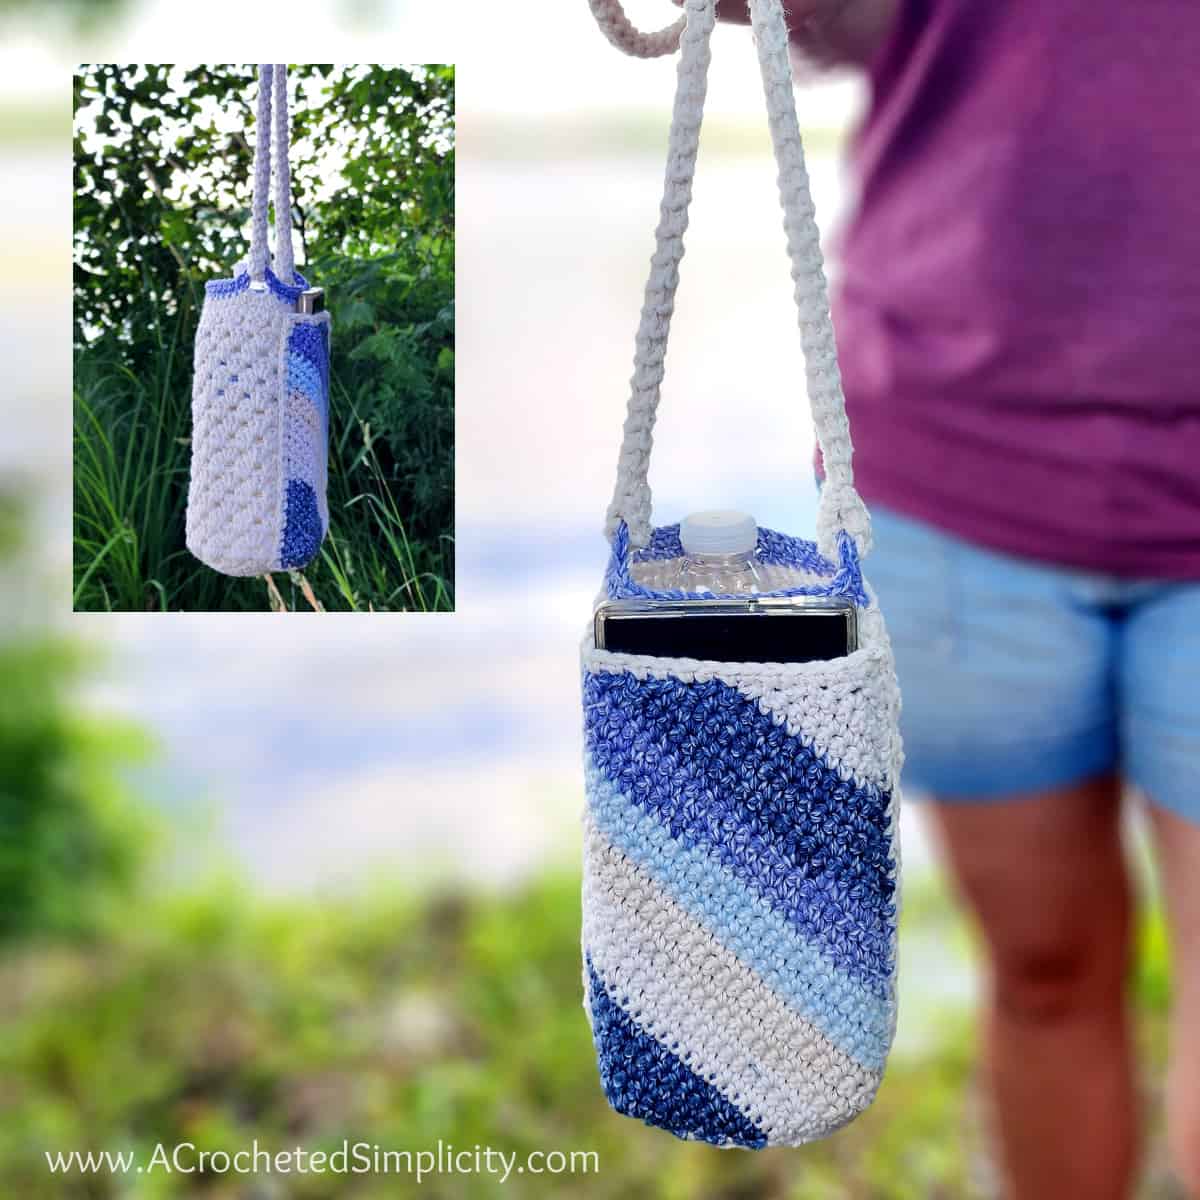 Crochet Water Bottle Holder: Free Pattern - Carroway Crochet